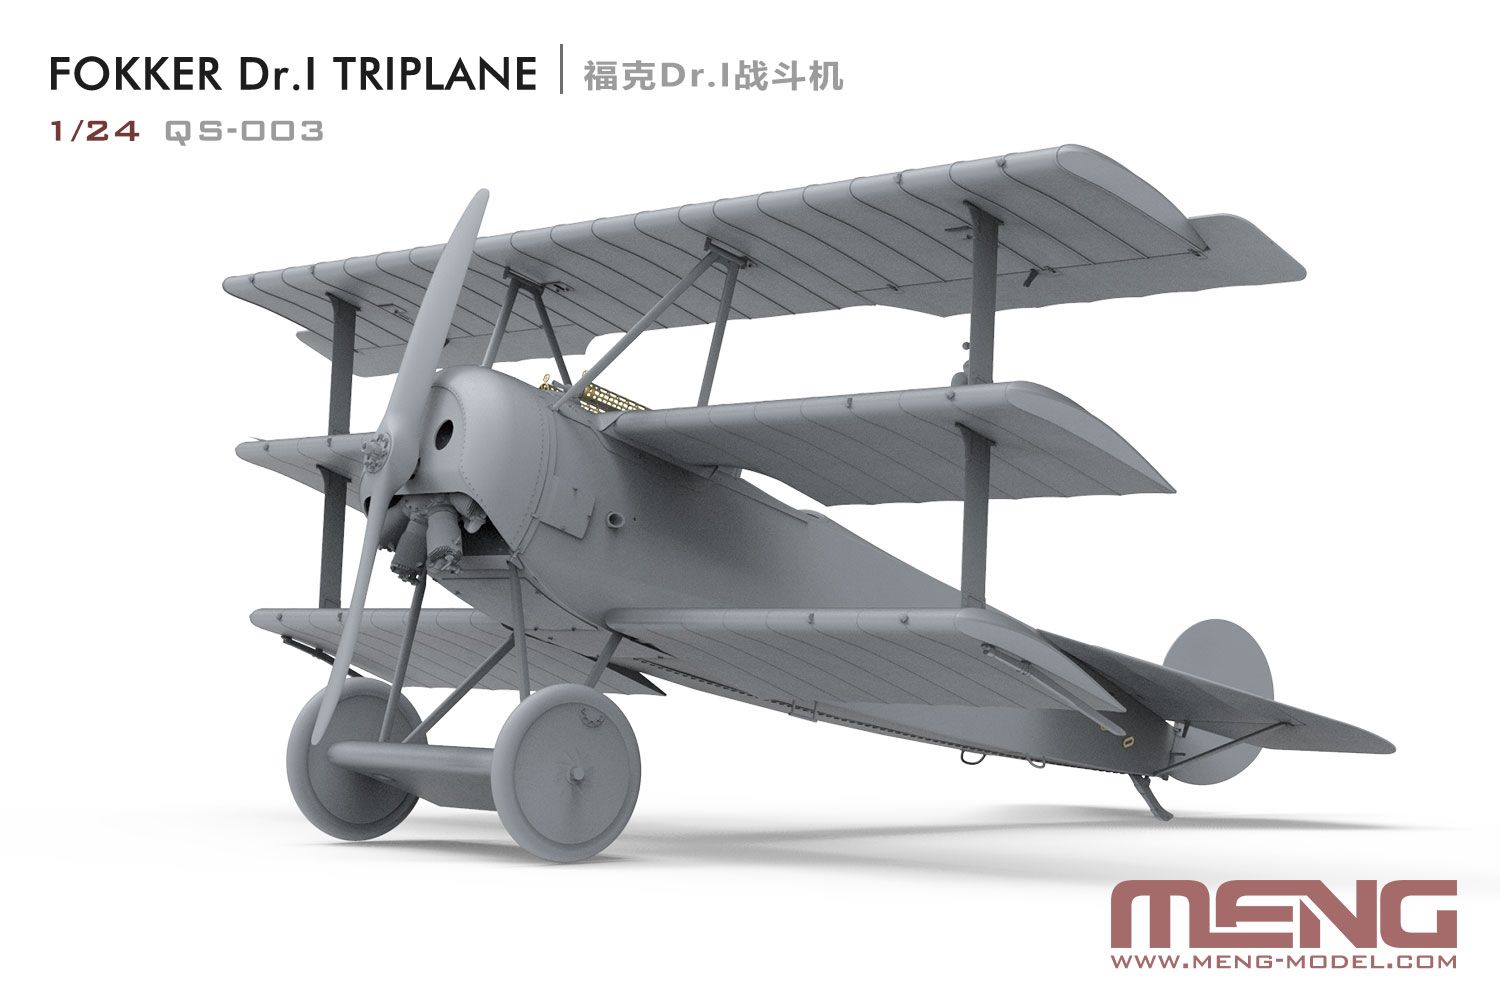 Meng 1/24 Scale Fokker DR.I Tri-Plane Model Kit